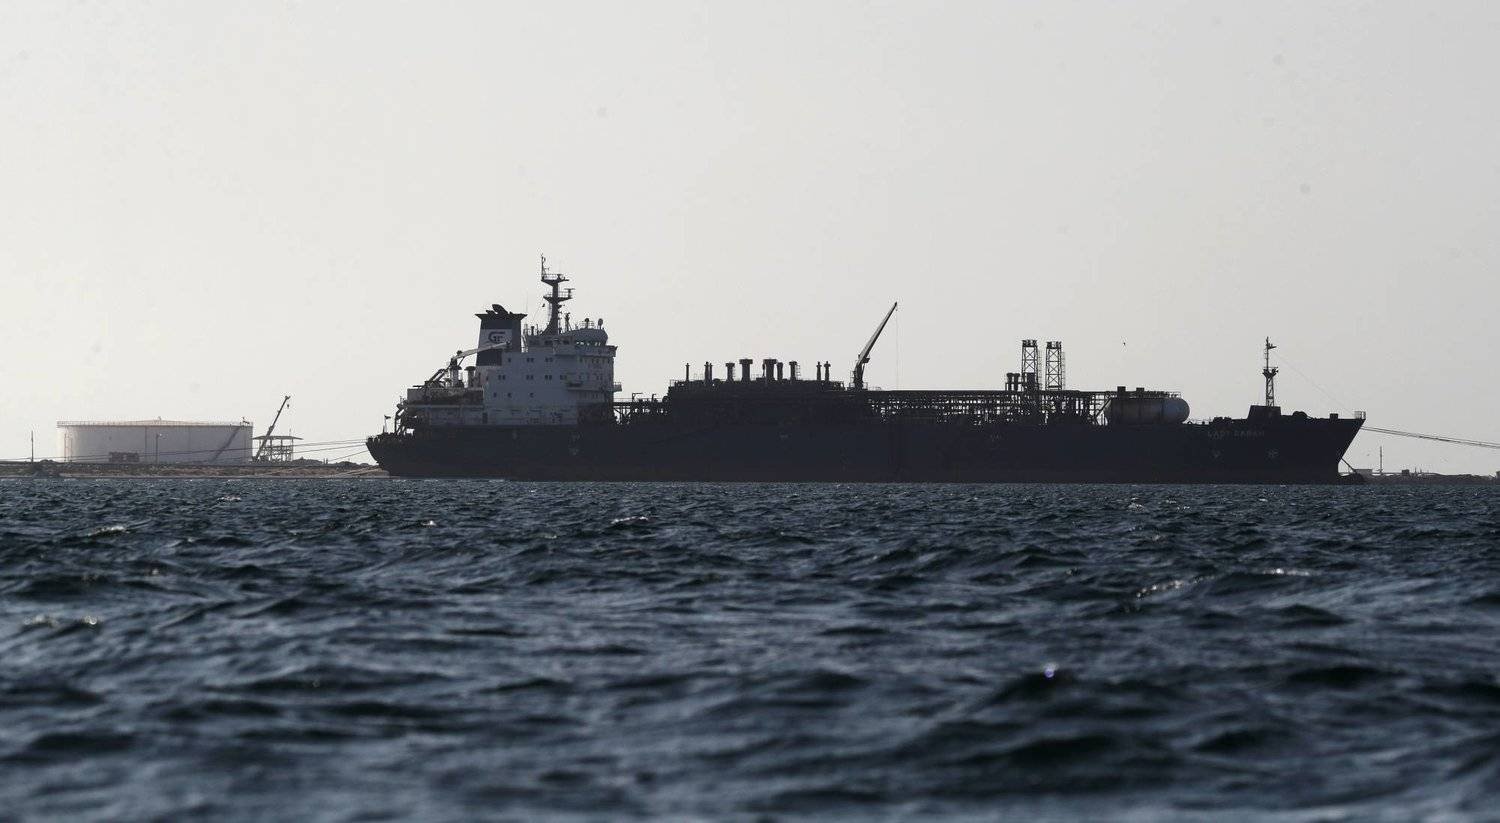 الفلبين: 23 من أفراد الطاقم الفلبيني آمنون بعد هجوم الحوثيين على سفينتهم بالبحر الأحمر